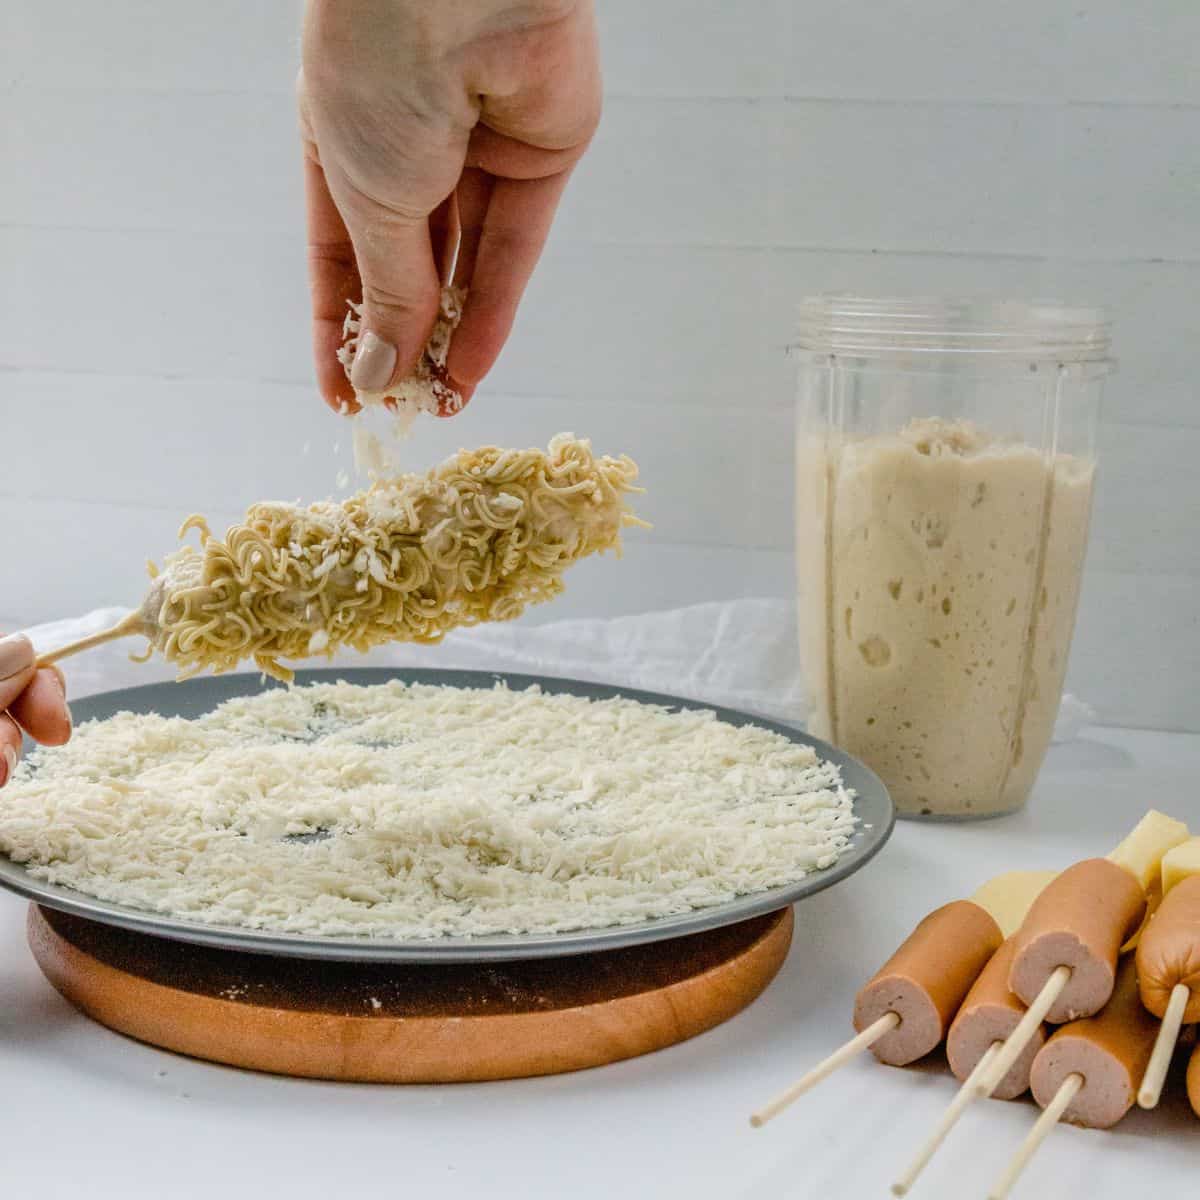 hand sprinkling crushed ramen noodle onto battered korean corn dog